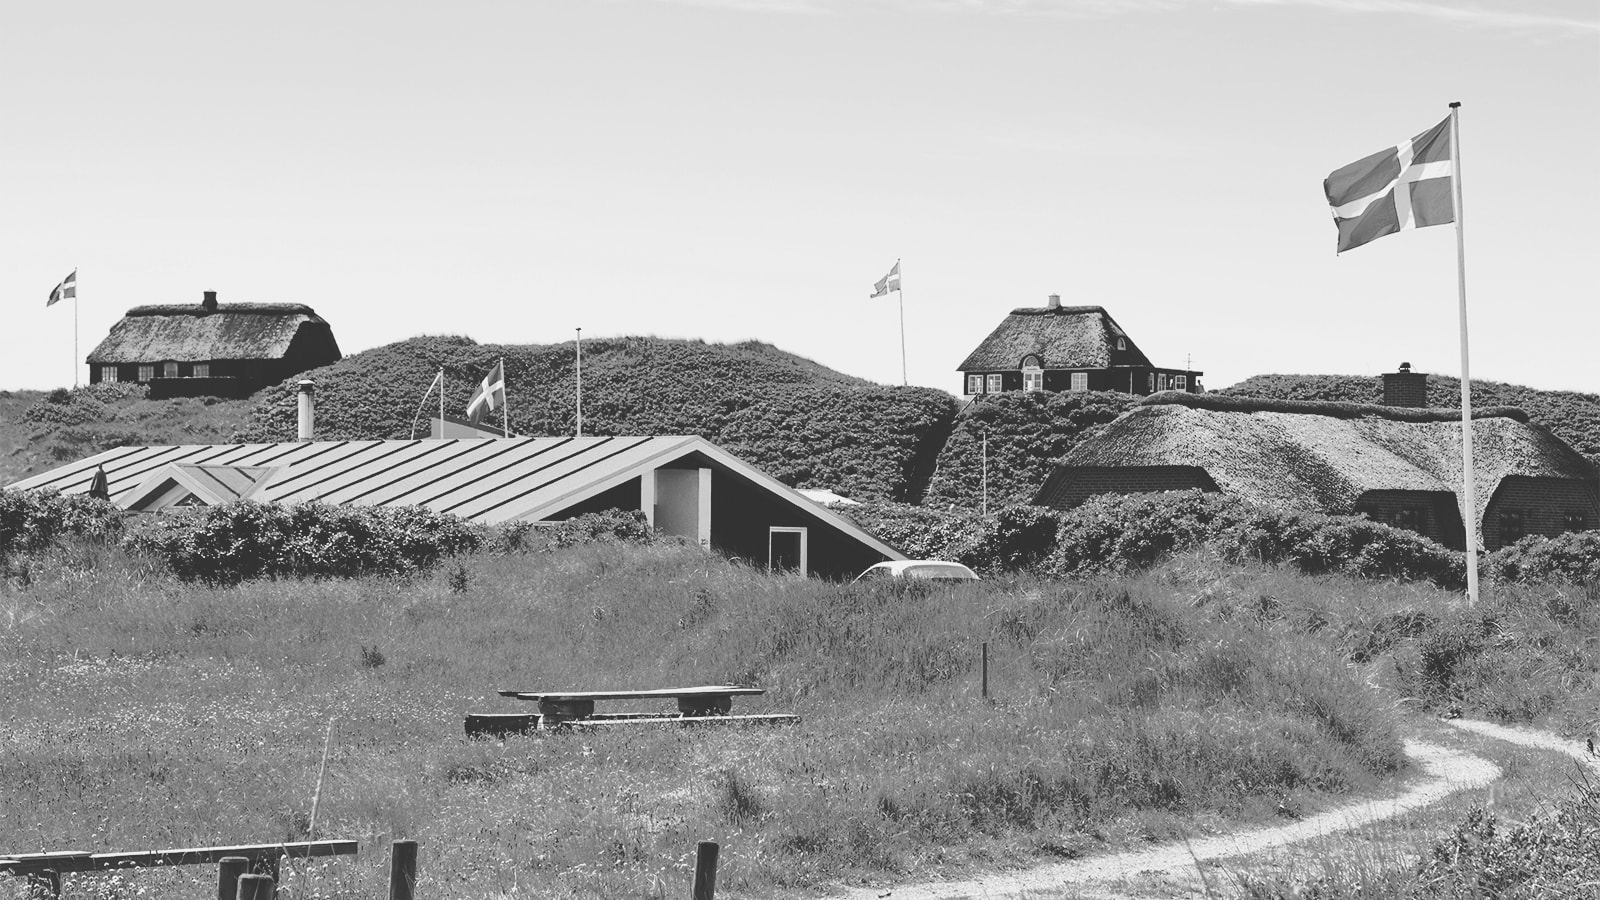 Sommerhuse i klitter med dannebrog hejst i flagstængerne